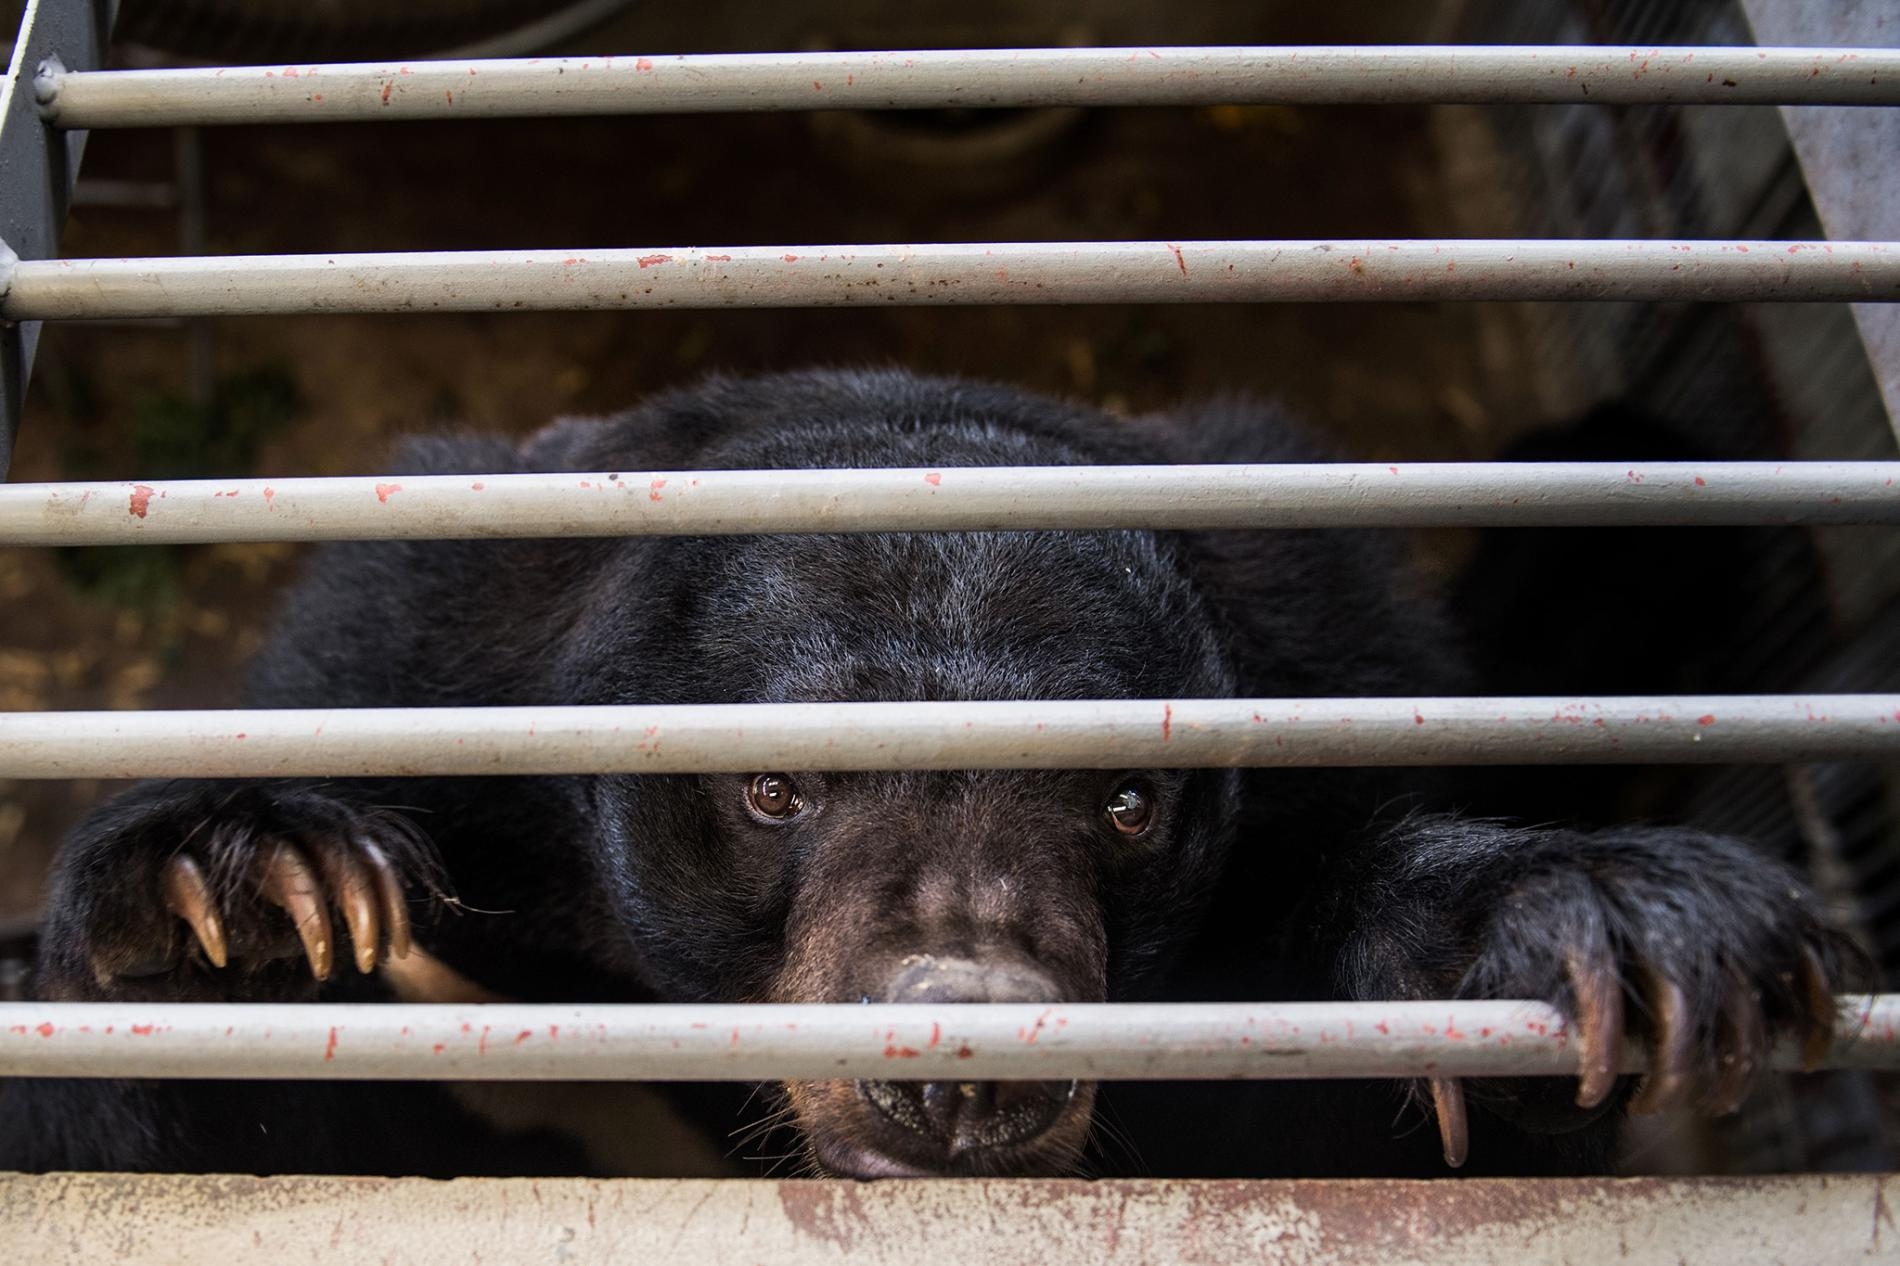 在中國及東南亞的養熊場，用於傳統藥物的熊膽會以一根導管、針筒或輸送管插入熊的膽囊裡抽取出來──這是一種侵入性又痛苦的過程。2017年有一千多頭熊從越南的非法熊膽養殖場獲救，這頭在越南熊救援中心（Vietnam Bear Rescue Centre）留置欄裡的亞洲黑熊正是其中之一。 PHOTOGRAPH BY ROBERTO SCHMIDT, AFP/GETTY 